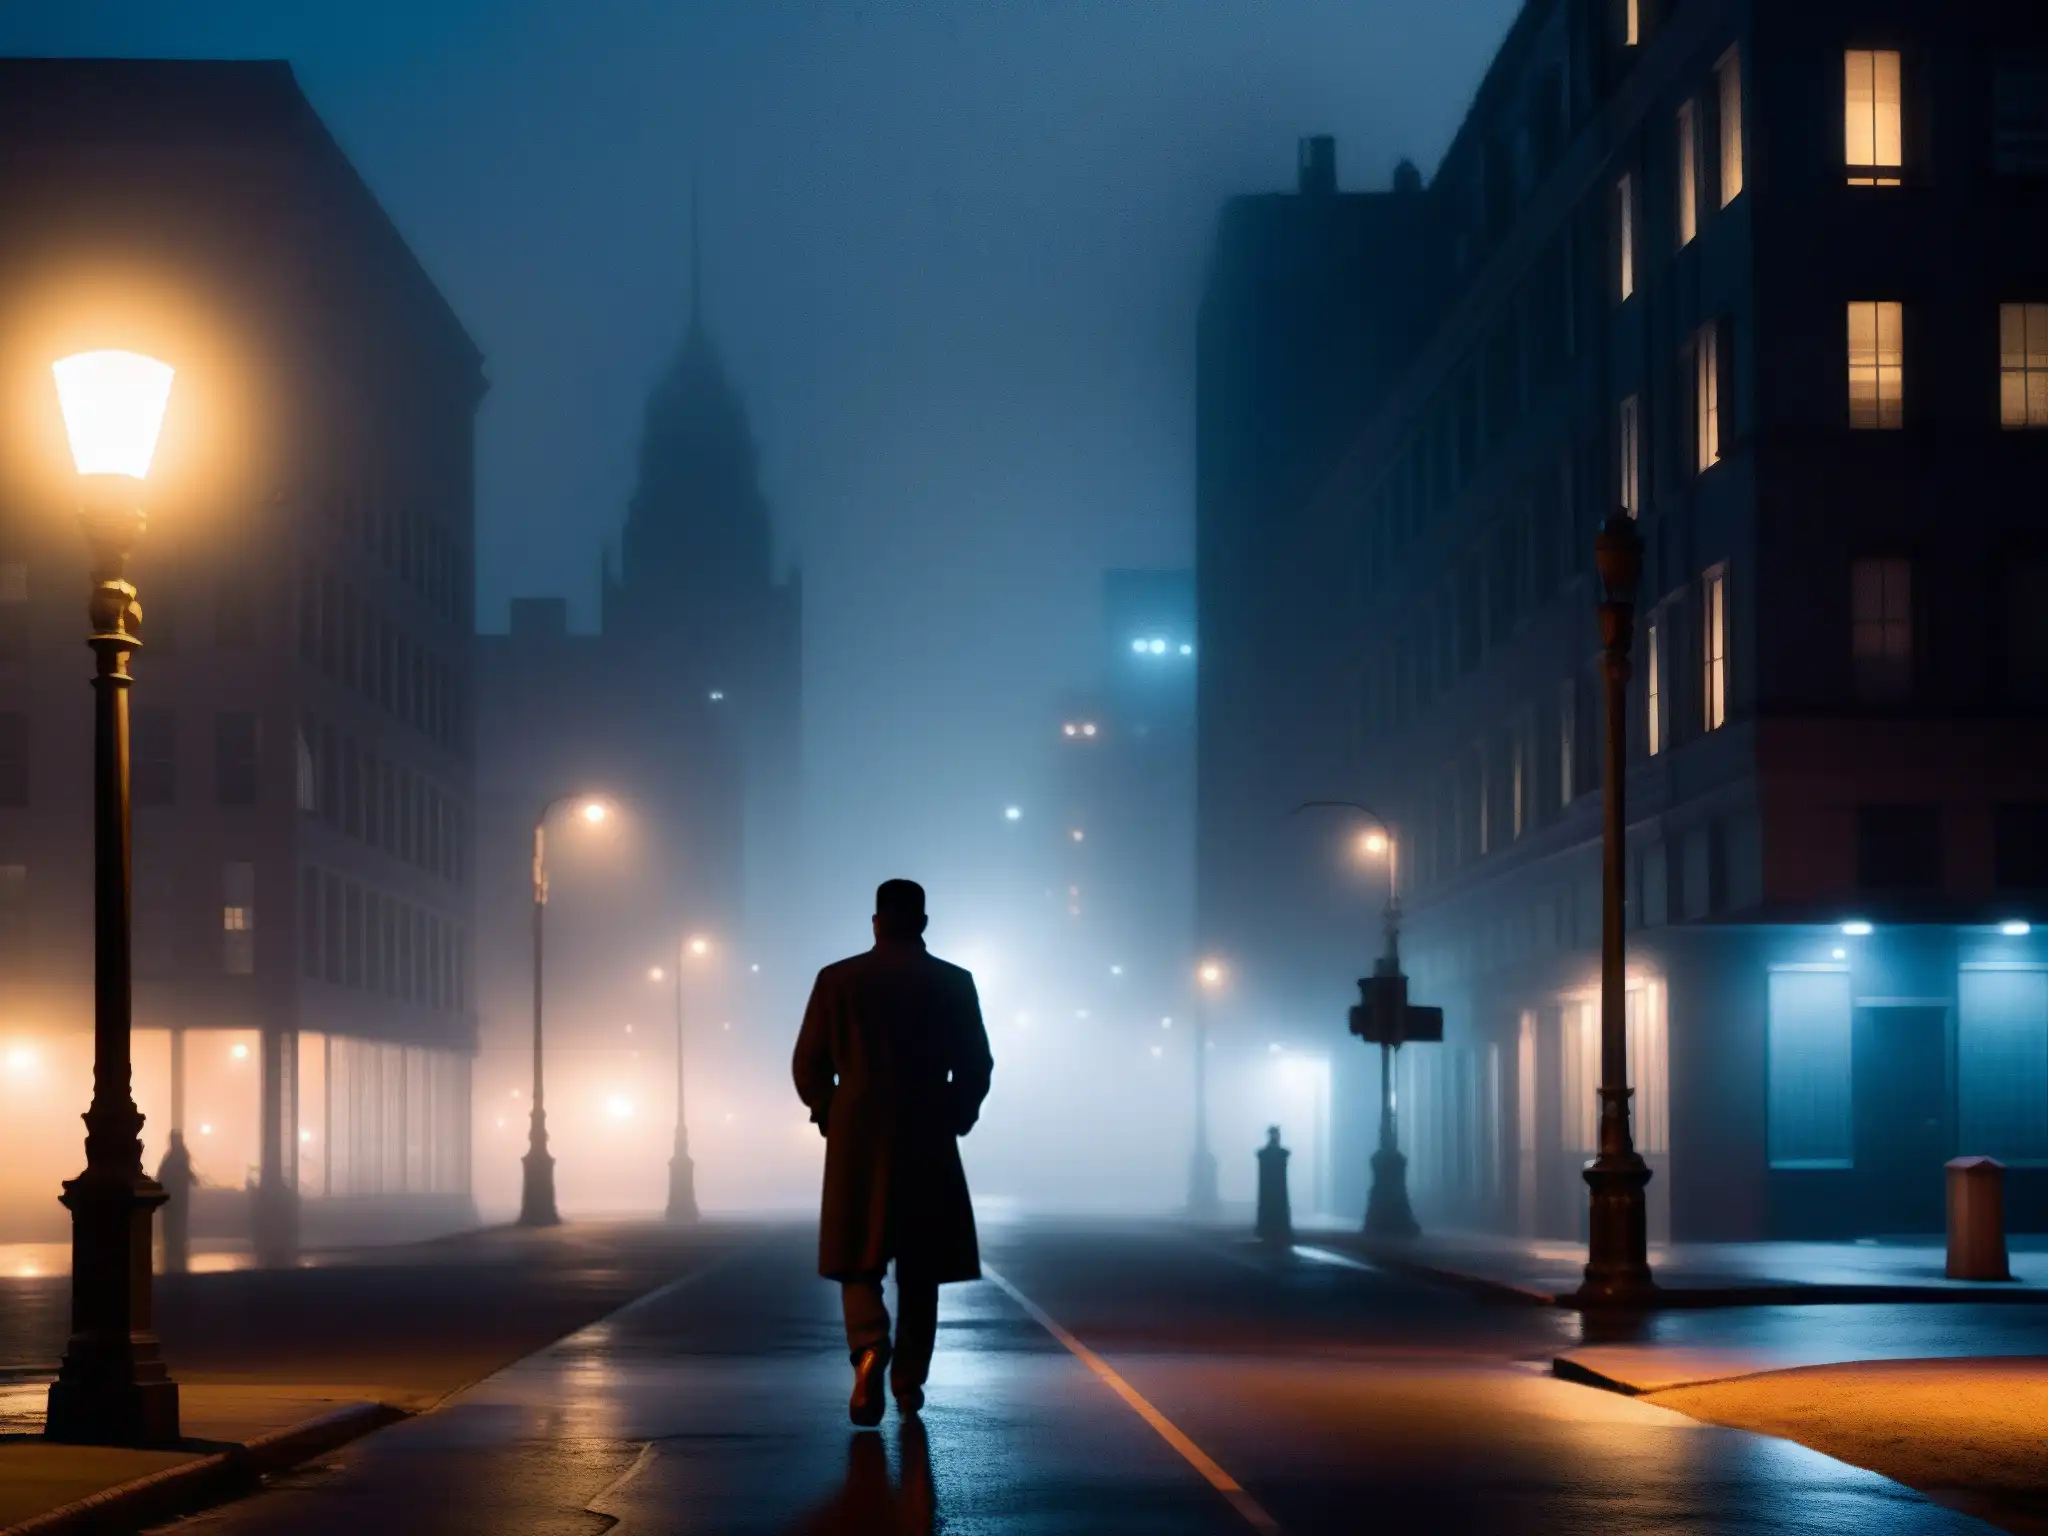 Silueta en la ciudad nocturna, influencia leyendas urbanas digitales, atmósfera misteriosa y inquietante entre la niebla